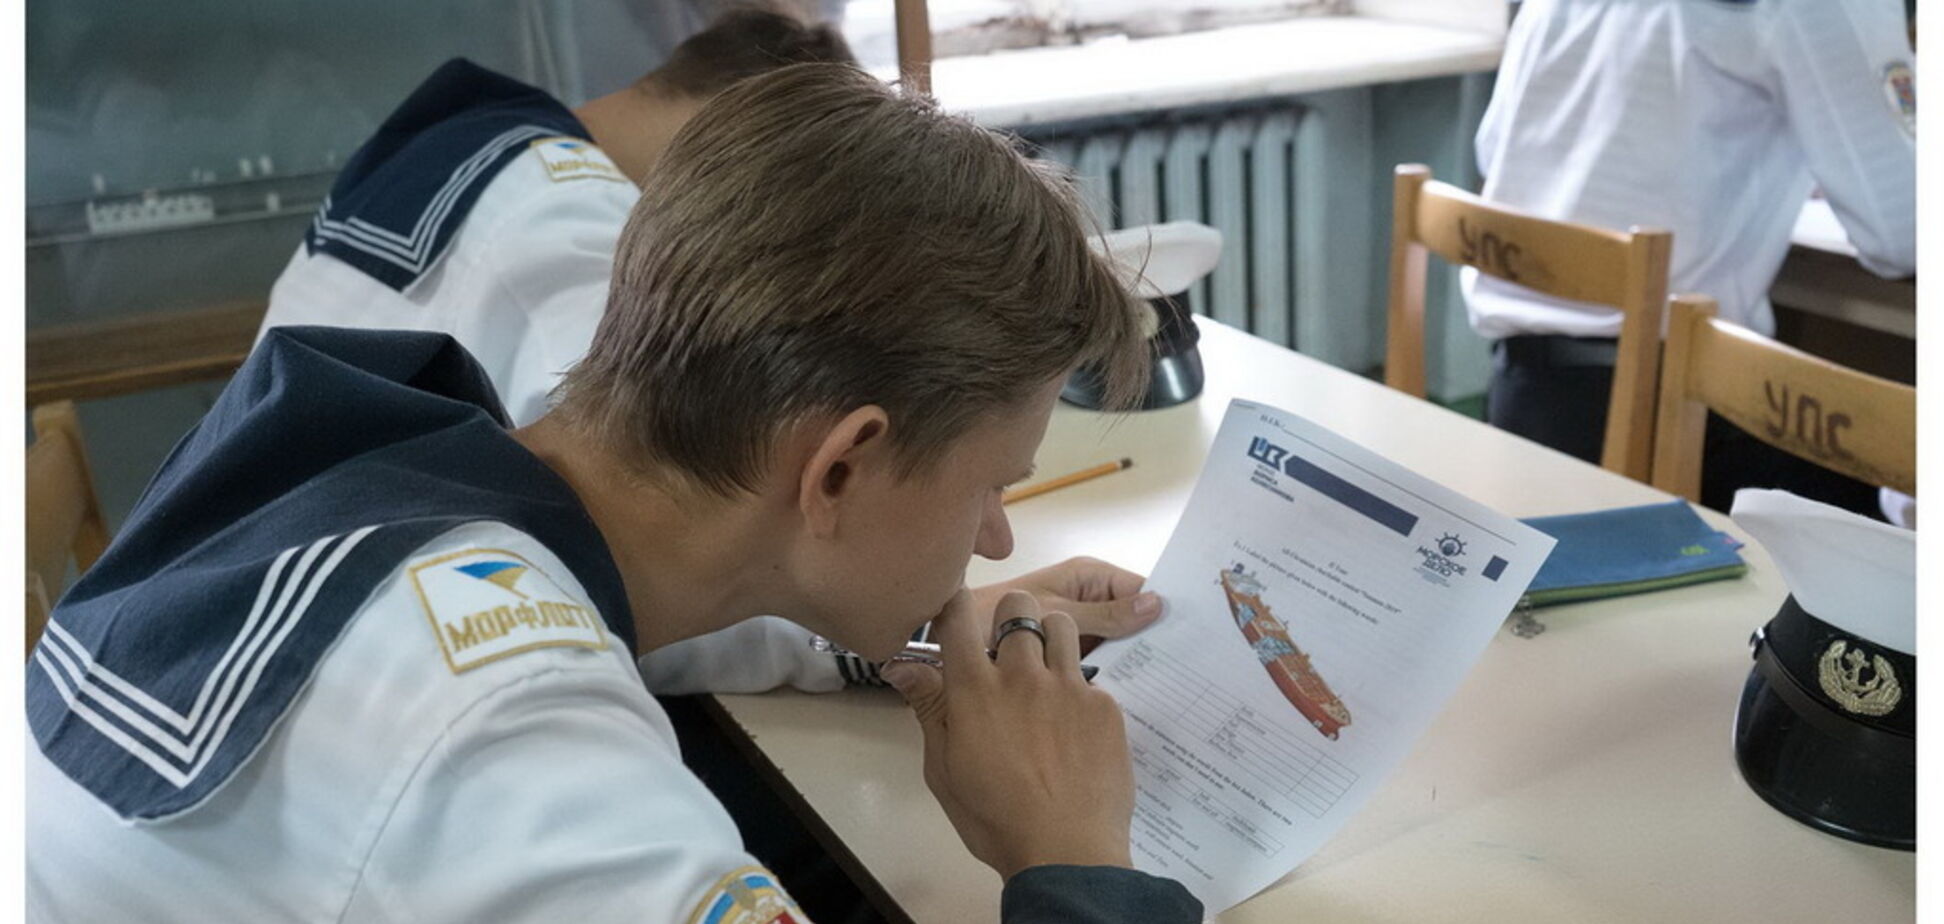 Отборочный этап всеукраинского образовательного проекта Морское дело 2019